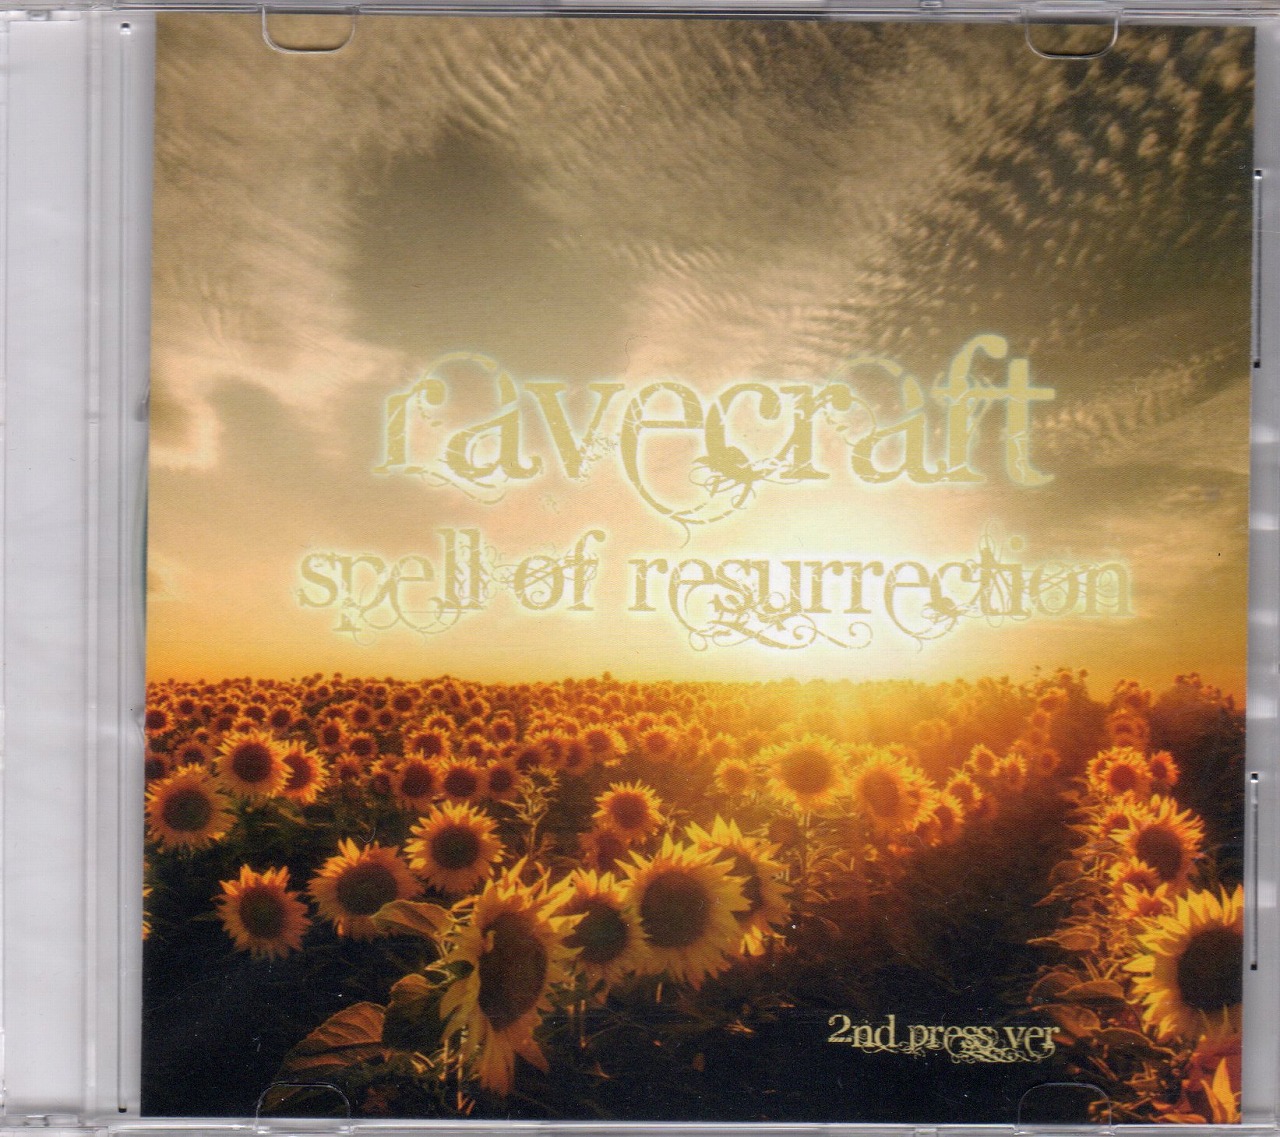 レイヴクラフト の CD 【2nd press ver】Spell of resurrection